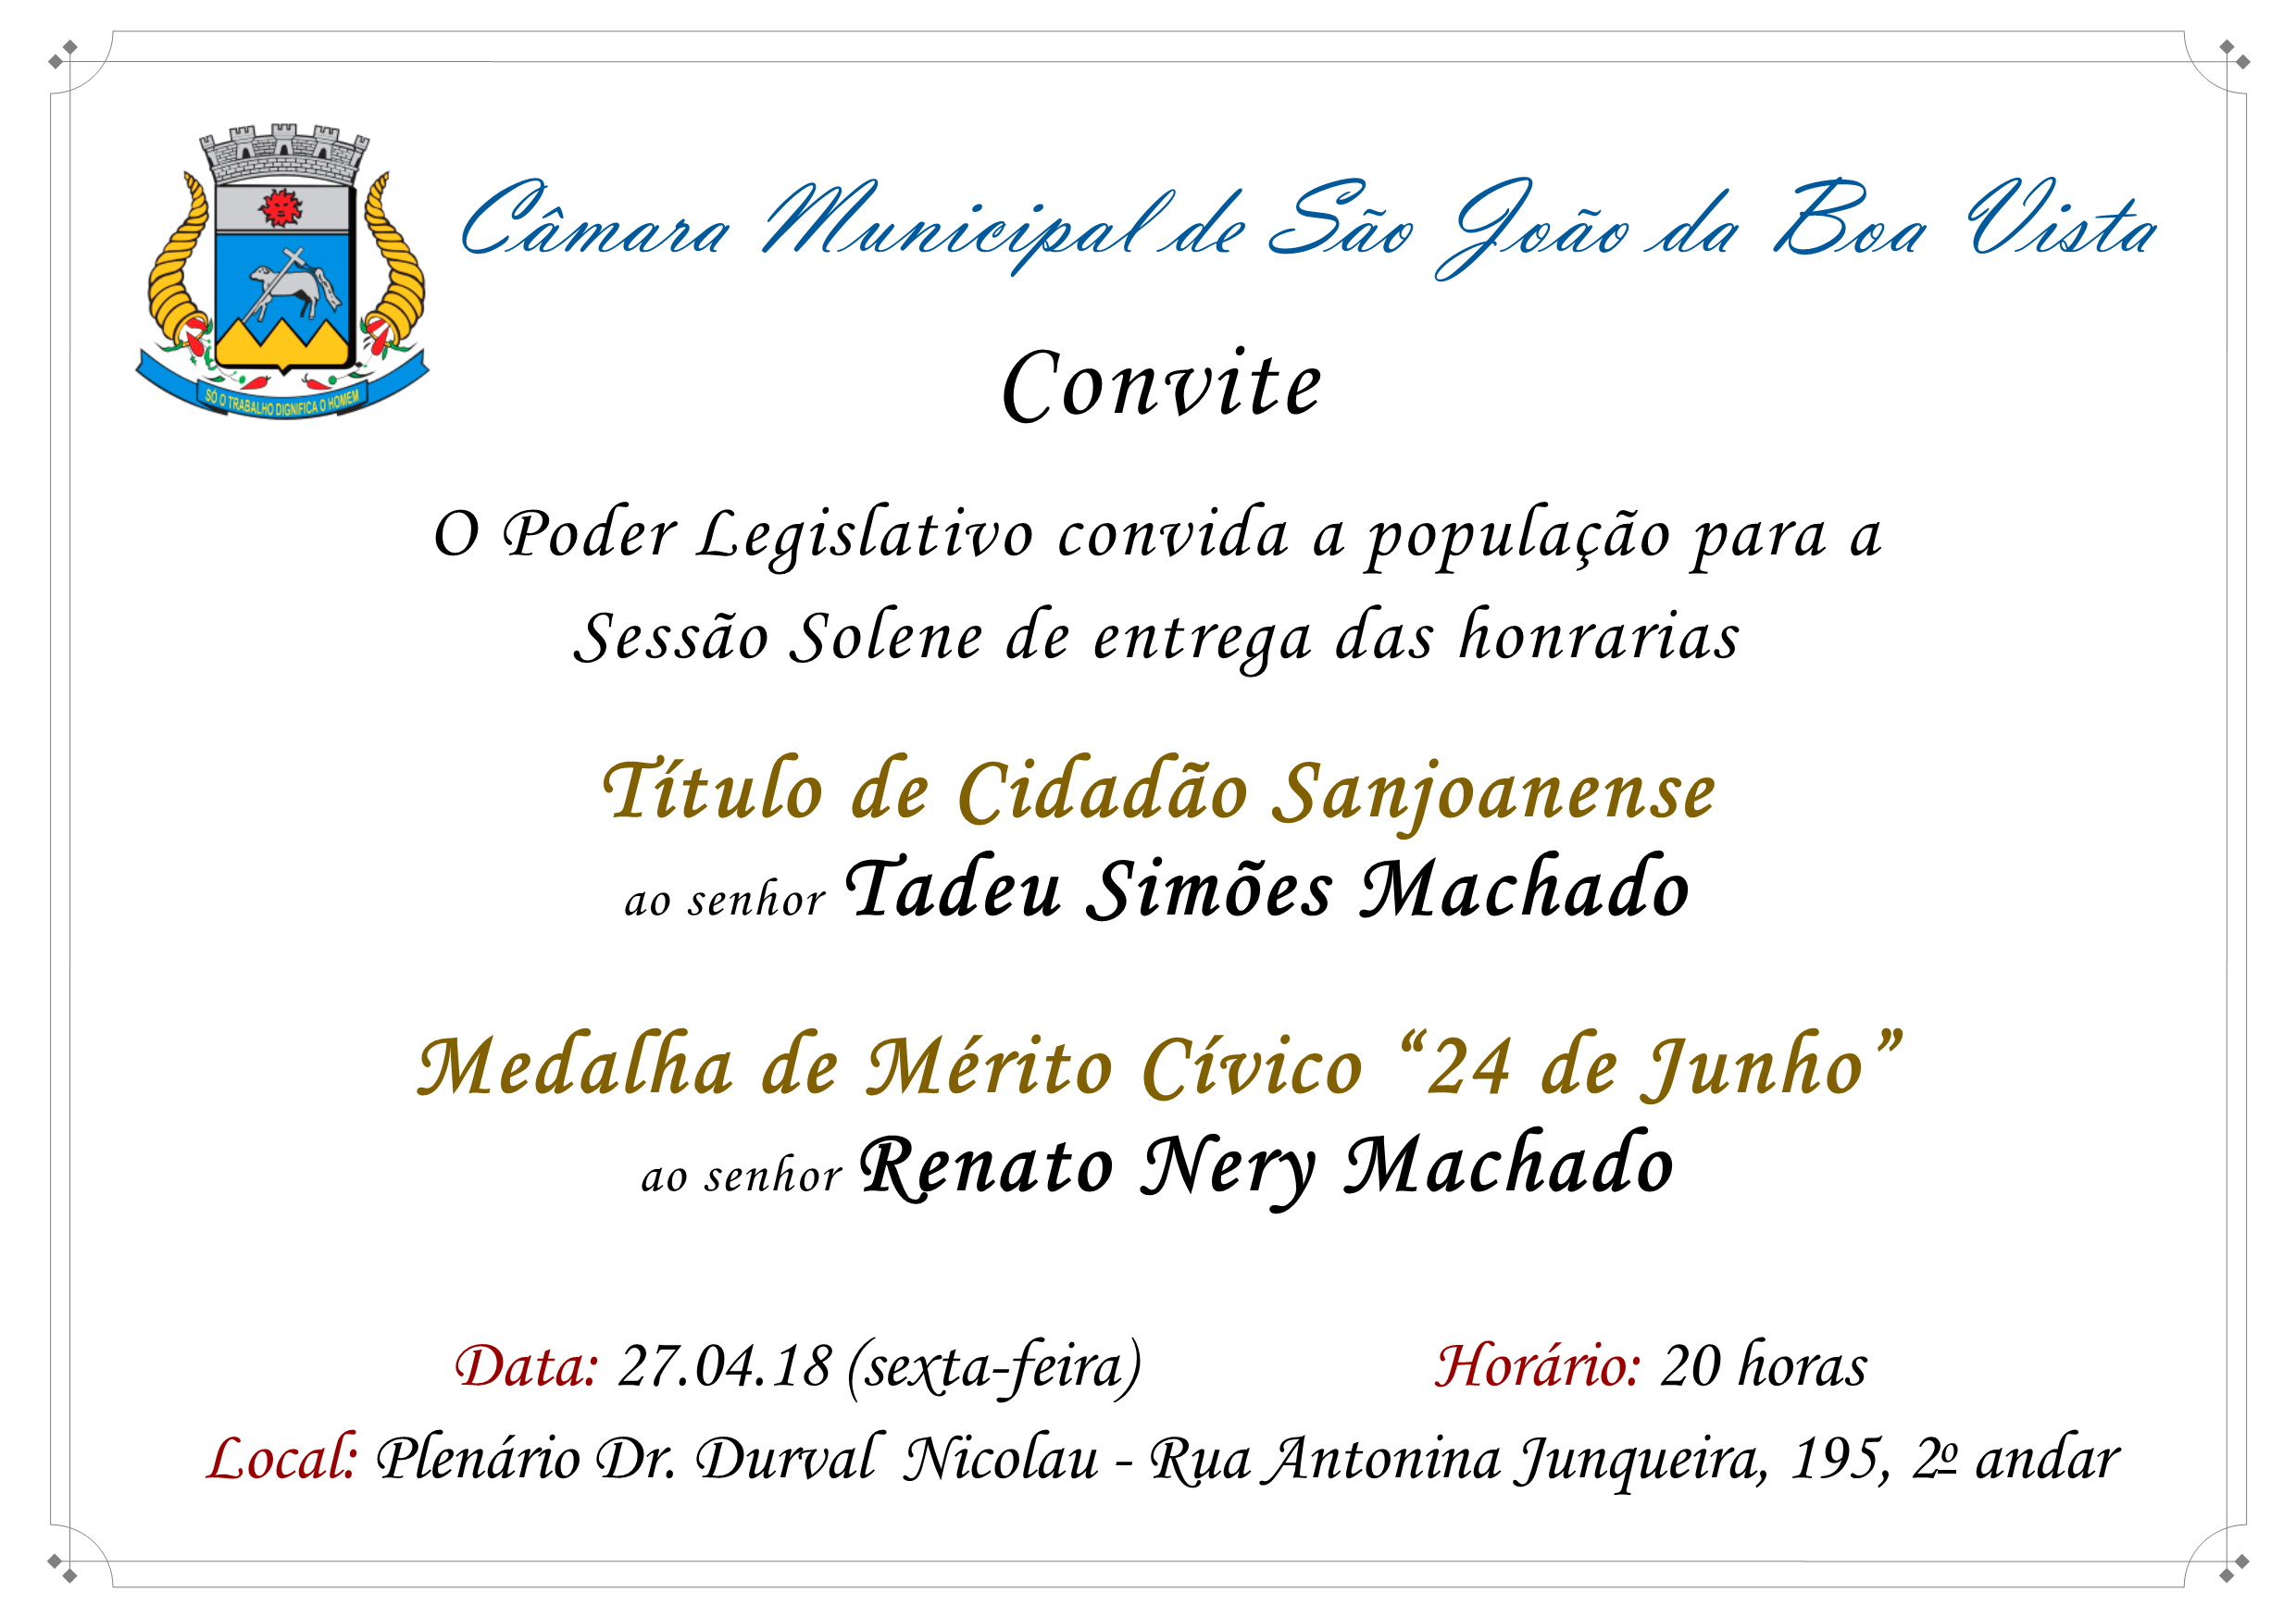 Câmara Municipal convida a população para Sessão Solene no dia 27.04.18